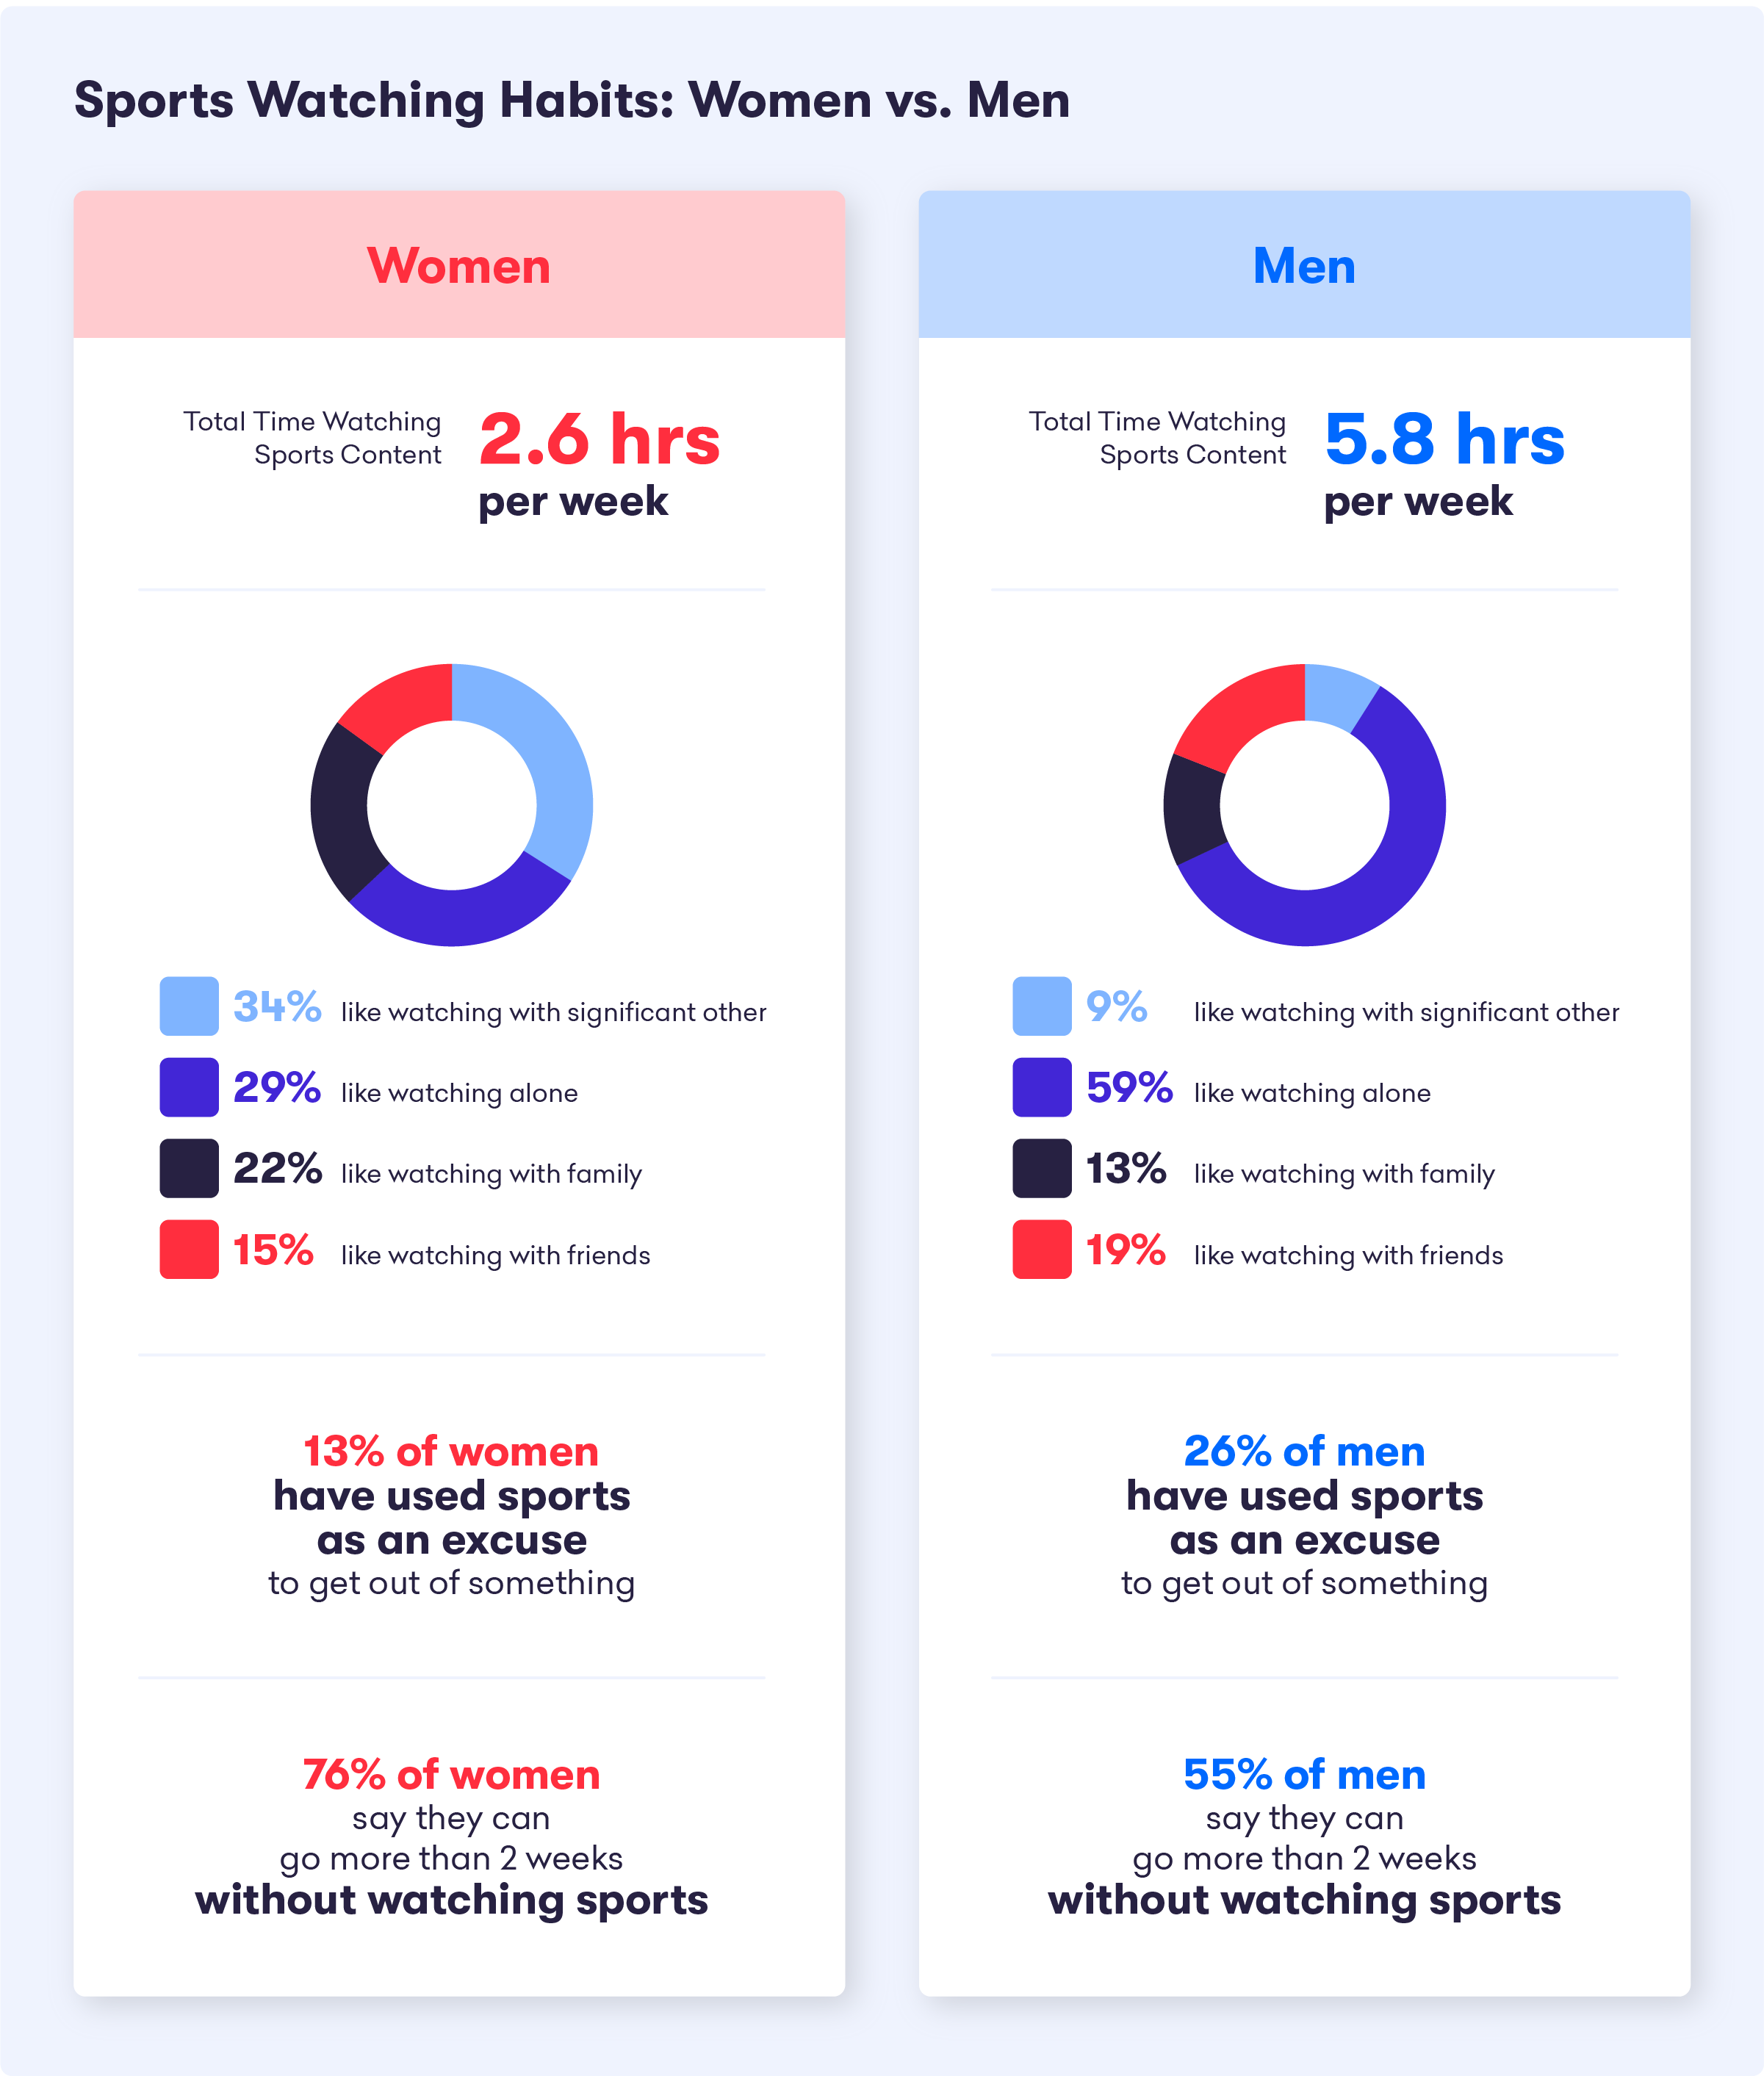 A graph showing men's vs. women's sports-watching habits